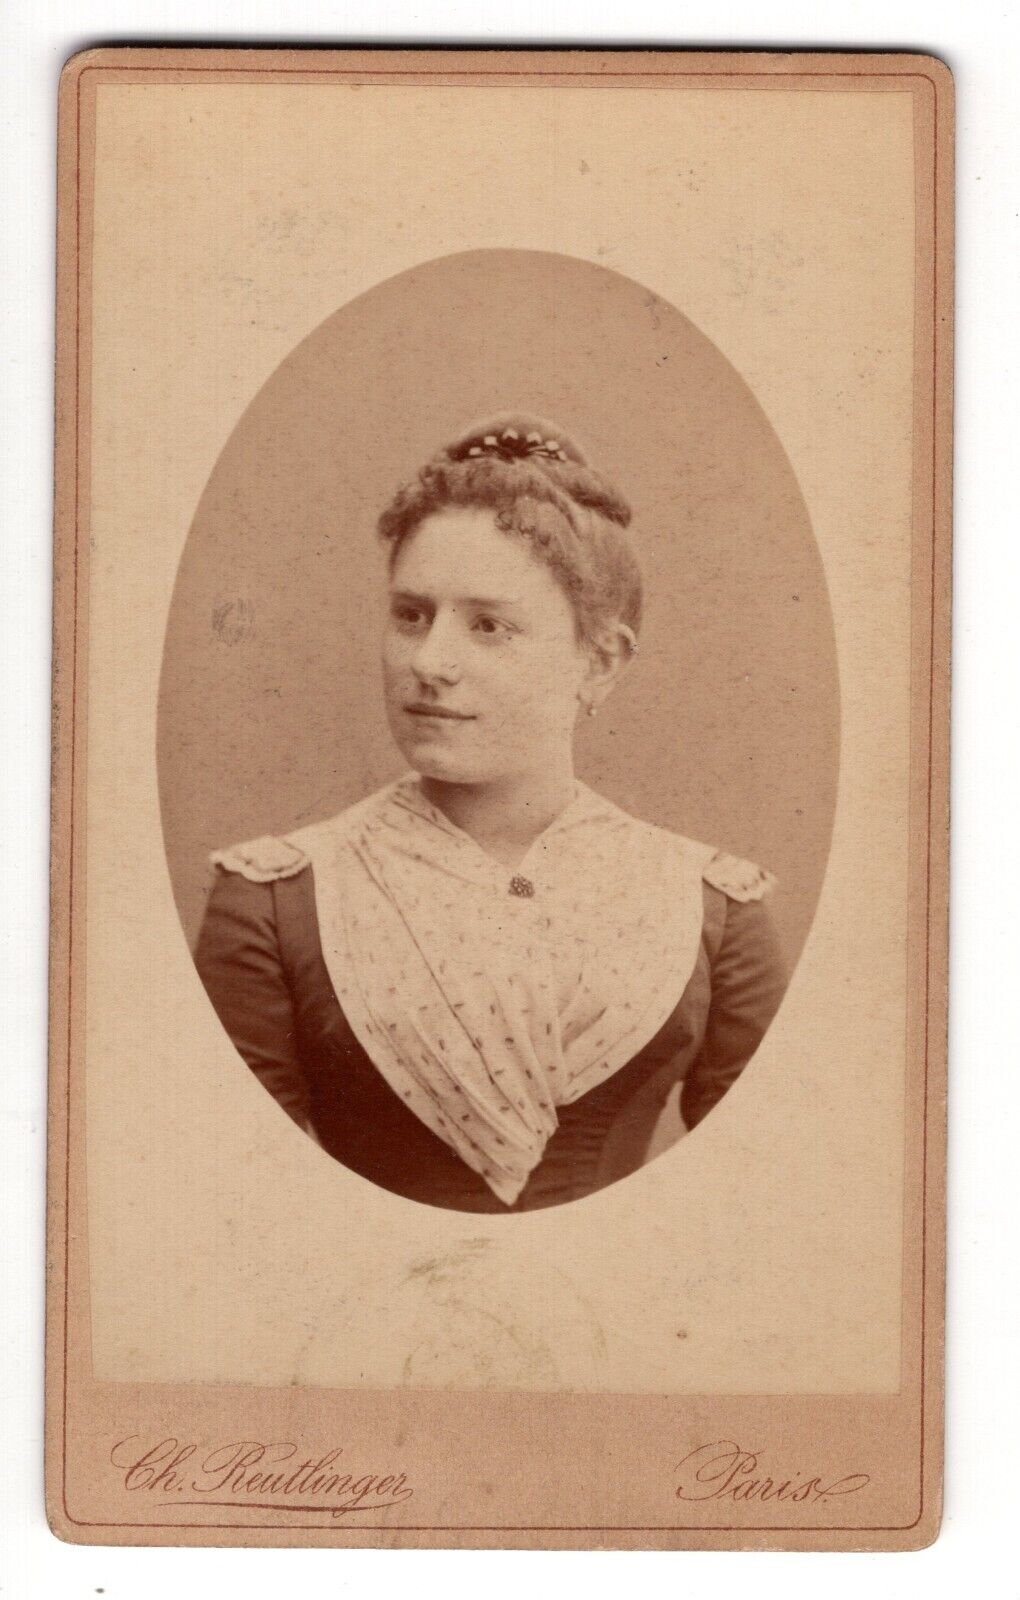 CIRCA 1890s CDV CH. REUTLINGER GORGEOUS YOUNG LADY IN FANCY DRESS PARIS FRANCE